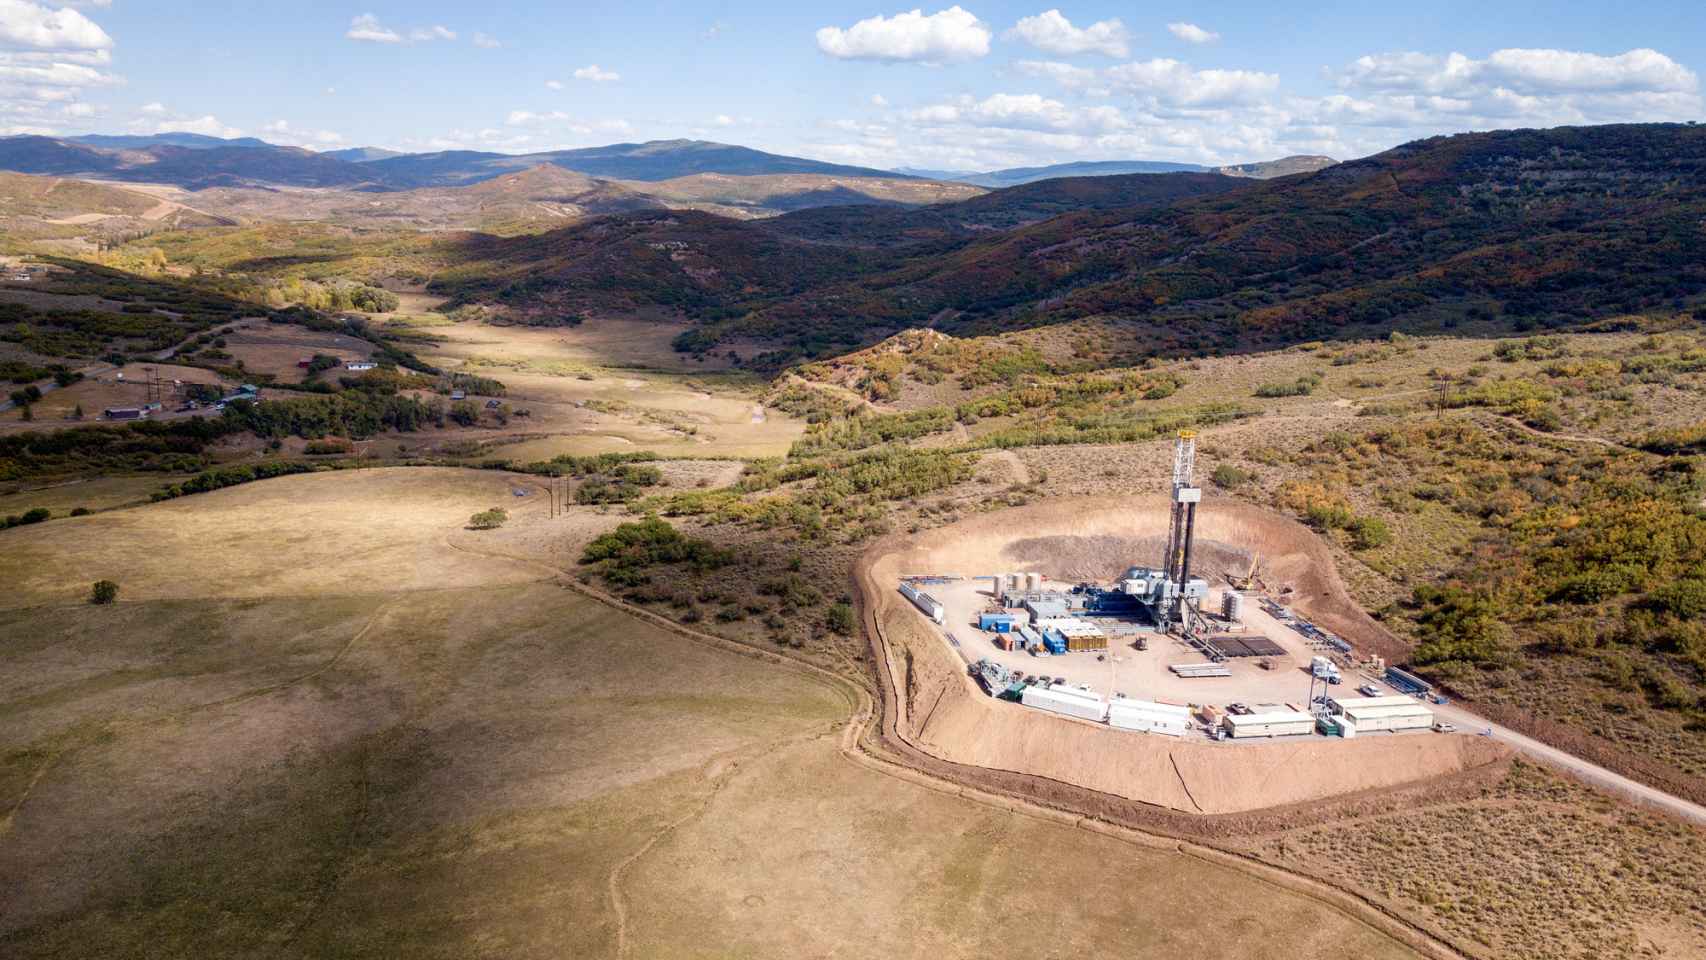 Extracción de gas natural por fracking o fracturación hidráulica.